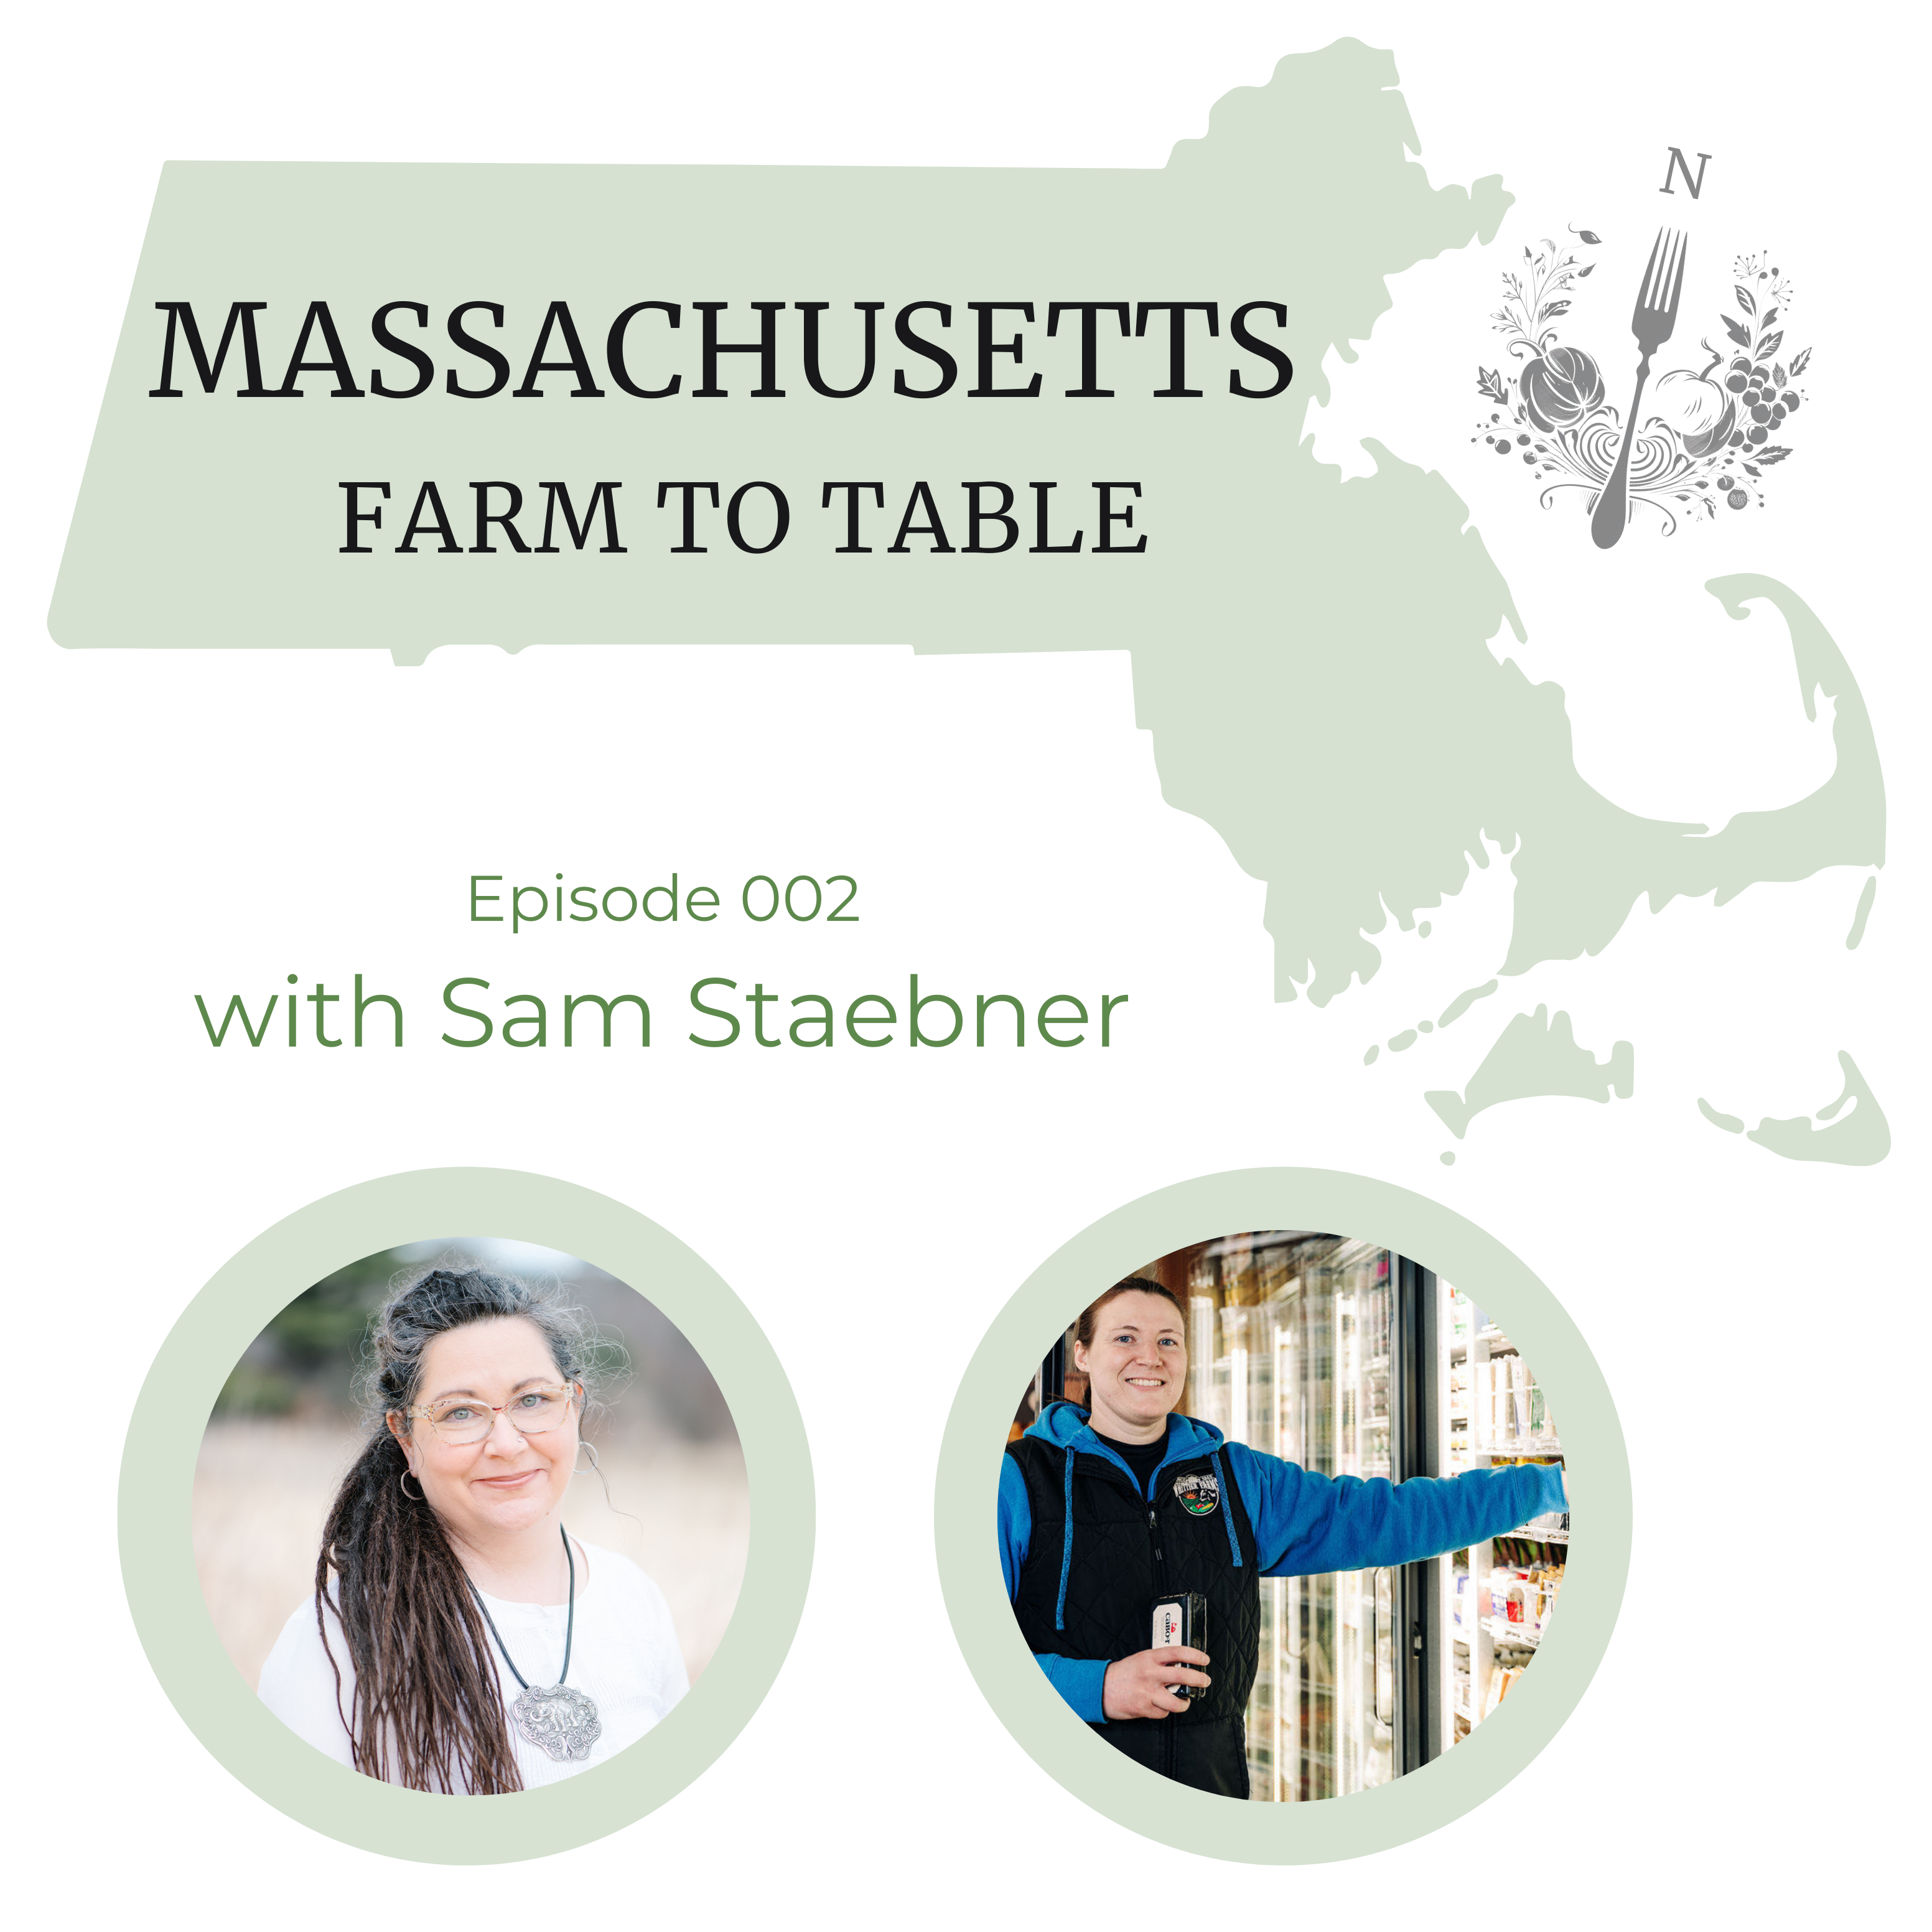 Massachusetts Farm to Table Podcast, Episode 002: Sam Staebner of Whittier Farms